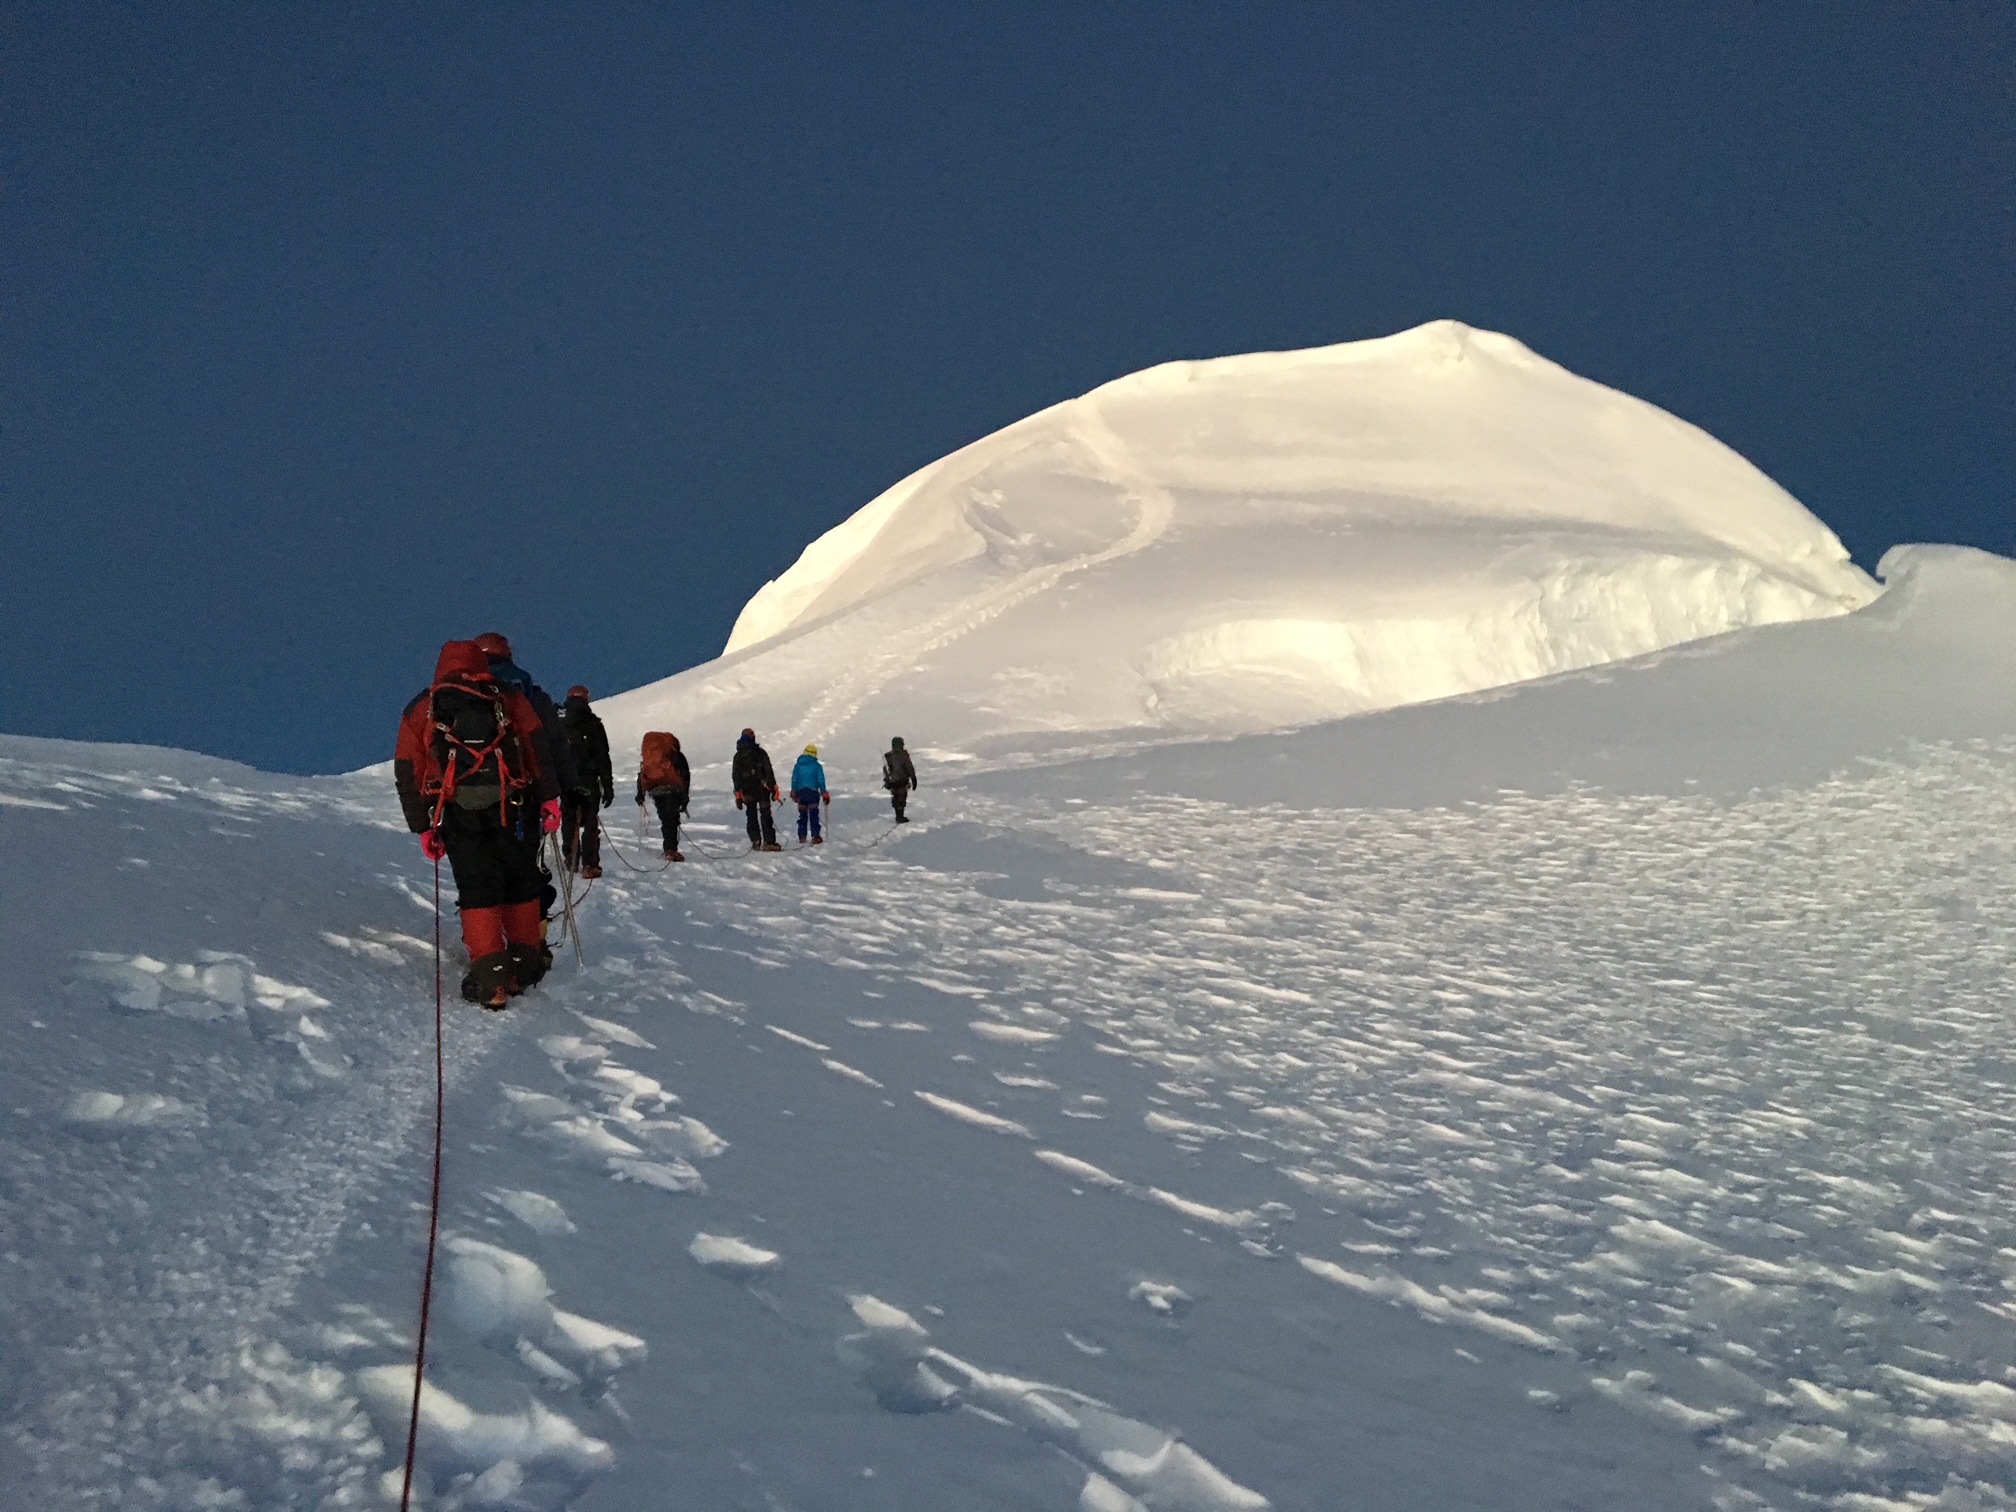 The summit of Mera Peak